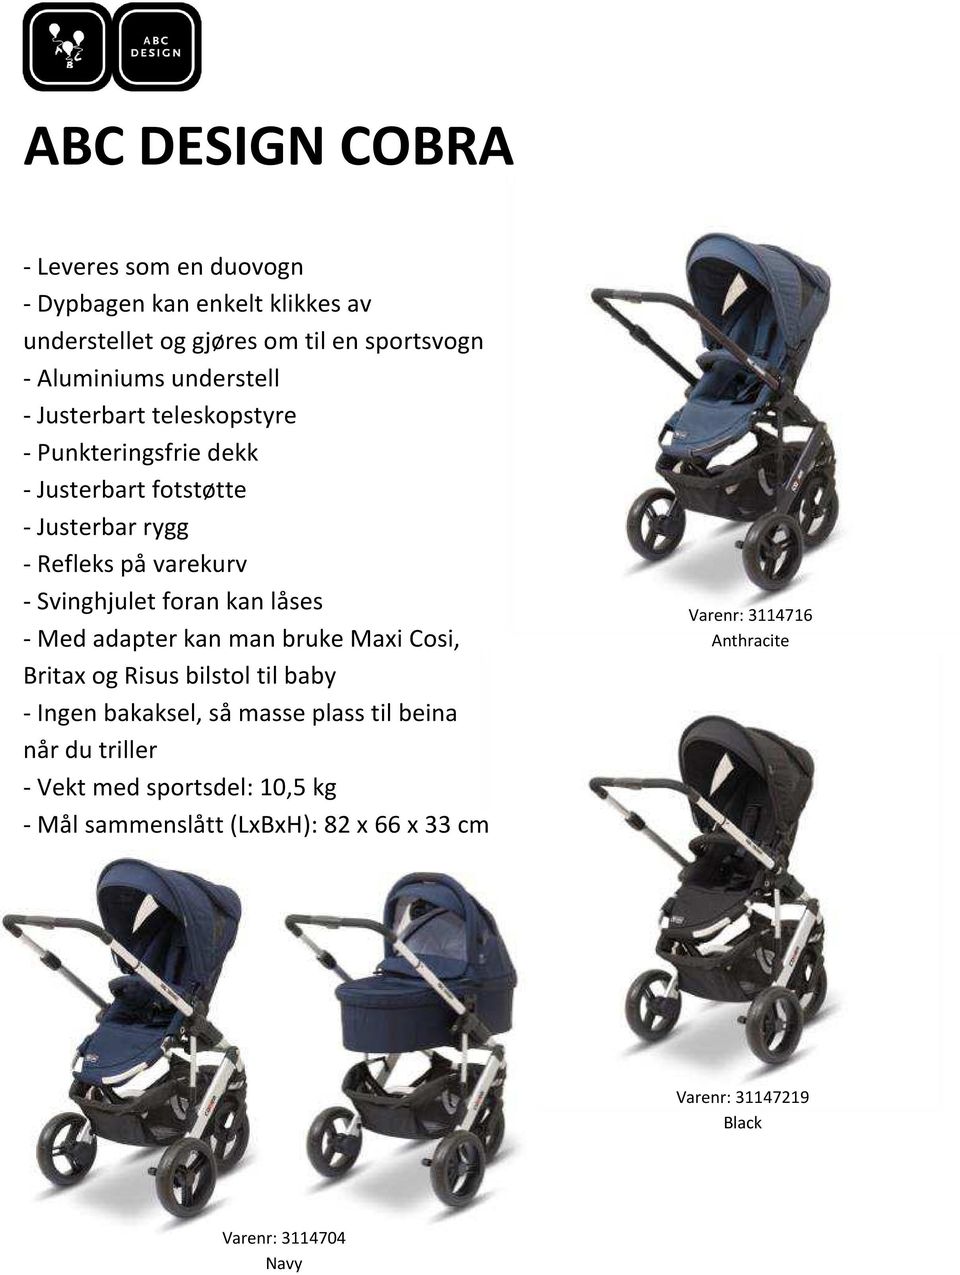 foran kan låses - Med adapter kan man bruke Maxi Cosi, Britax og Risus bilstol til baby - Ingen bakaksel, så masse plass til beina når du